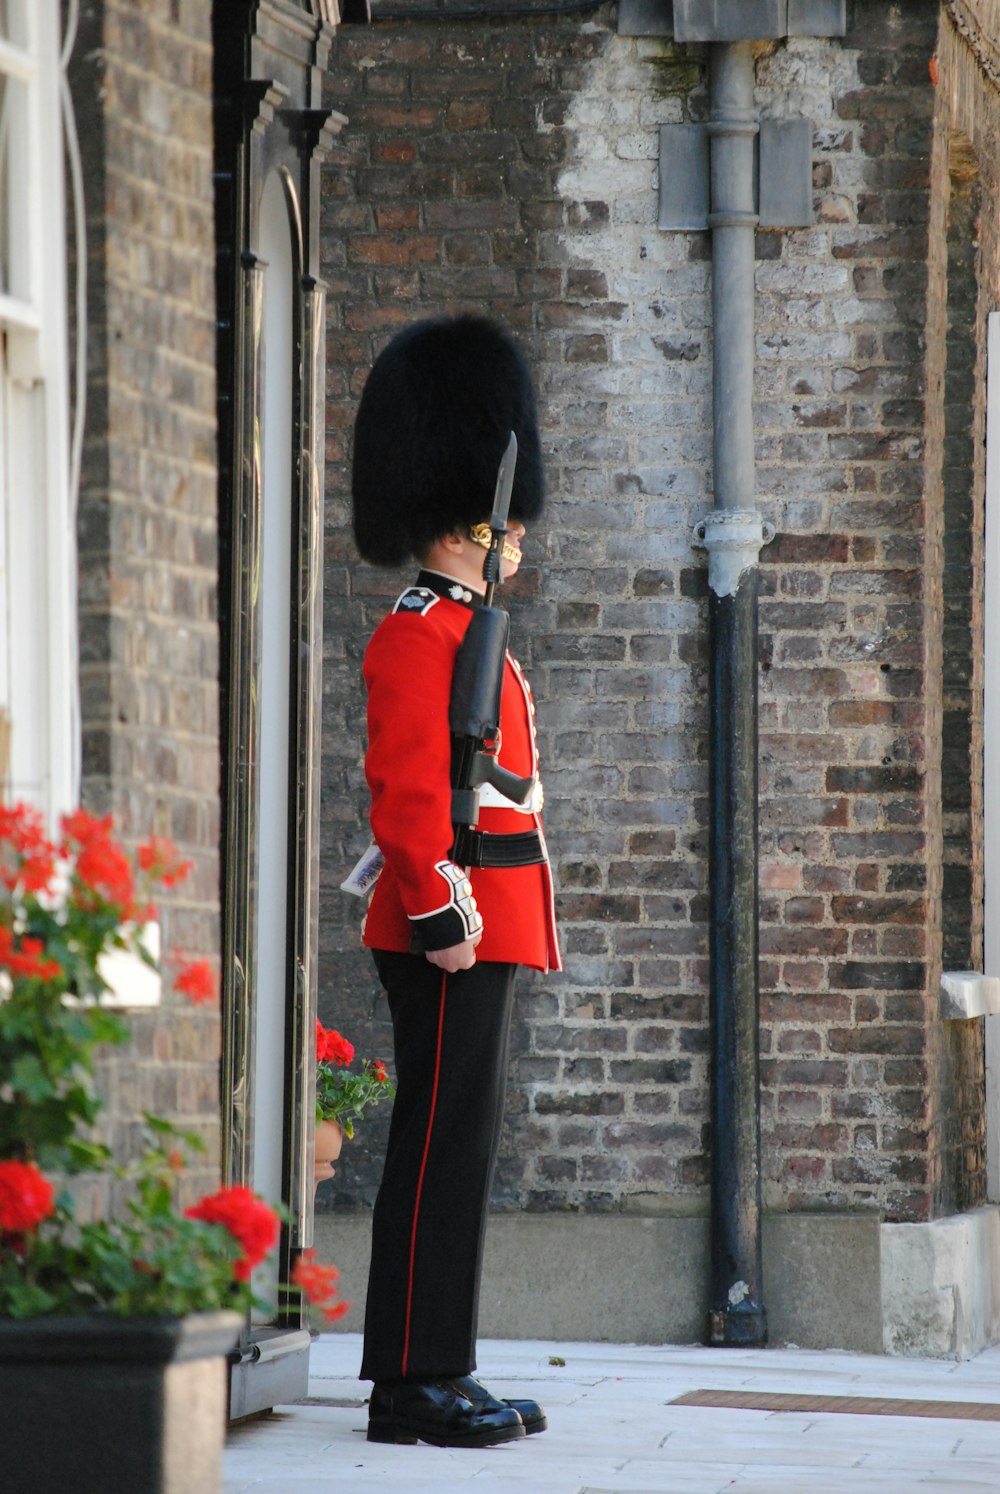 Person in roter und schwarzer Uniform, die tagsüber in der Nähe des schwarzen Metallpostens steht